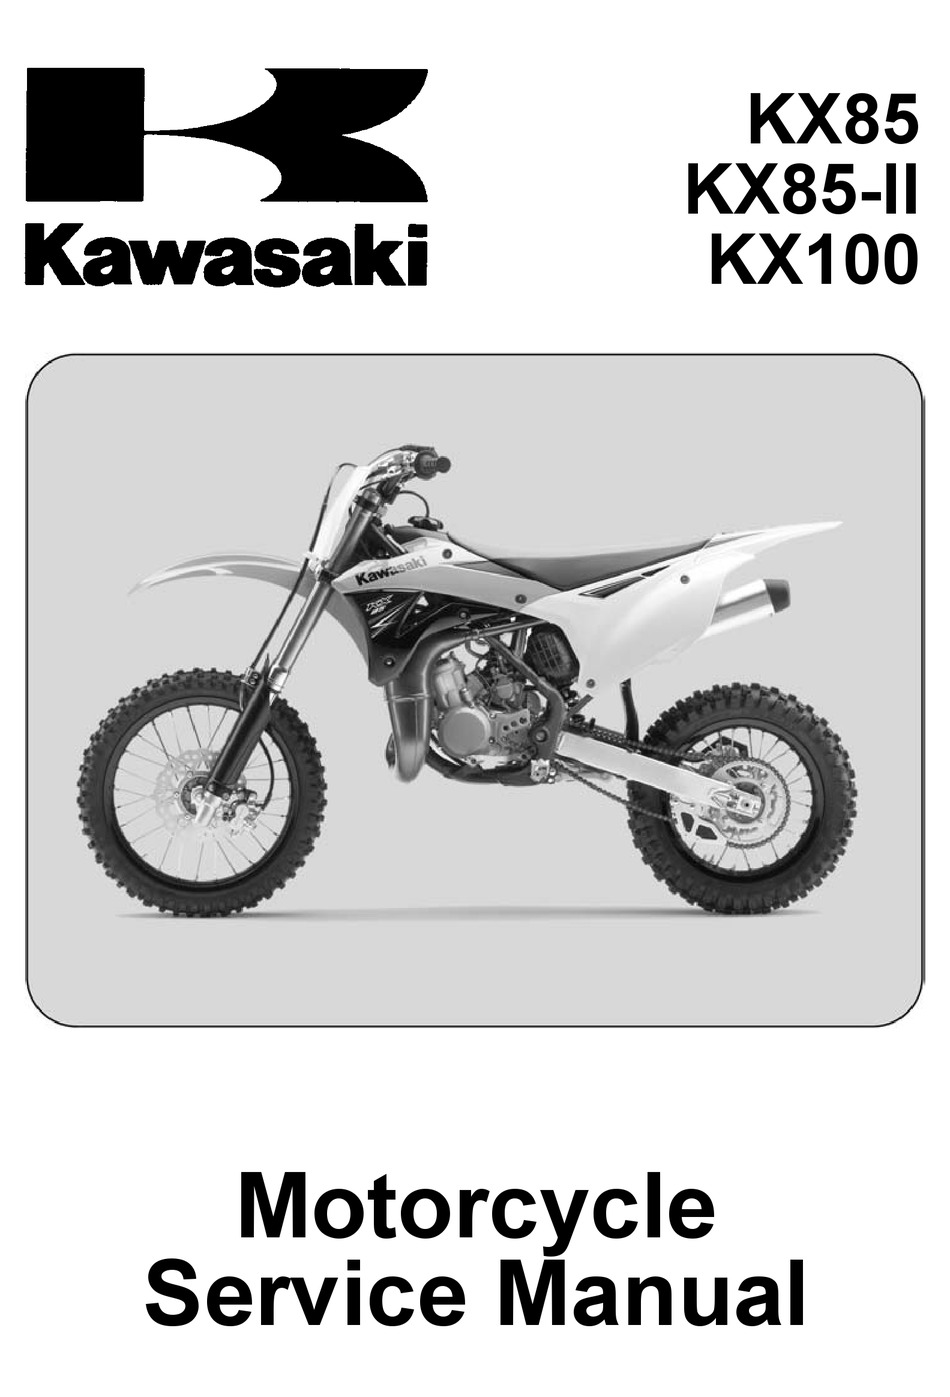 Clymer Workshop Manual Kawasaki KX80 1991-2000 KX85 2001-2016 KX100 1989-2016 